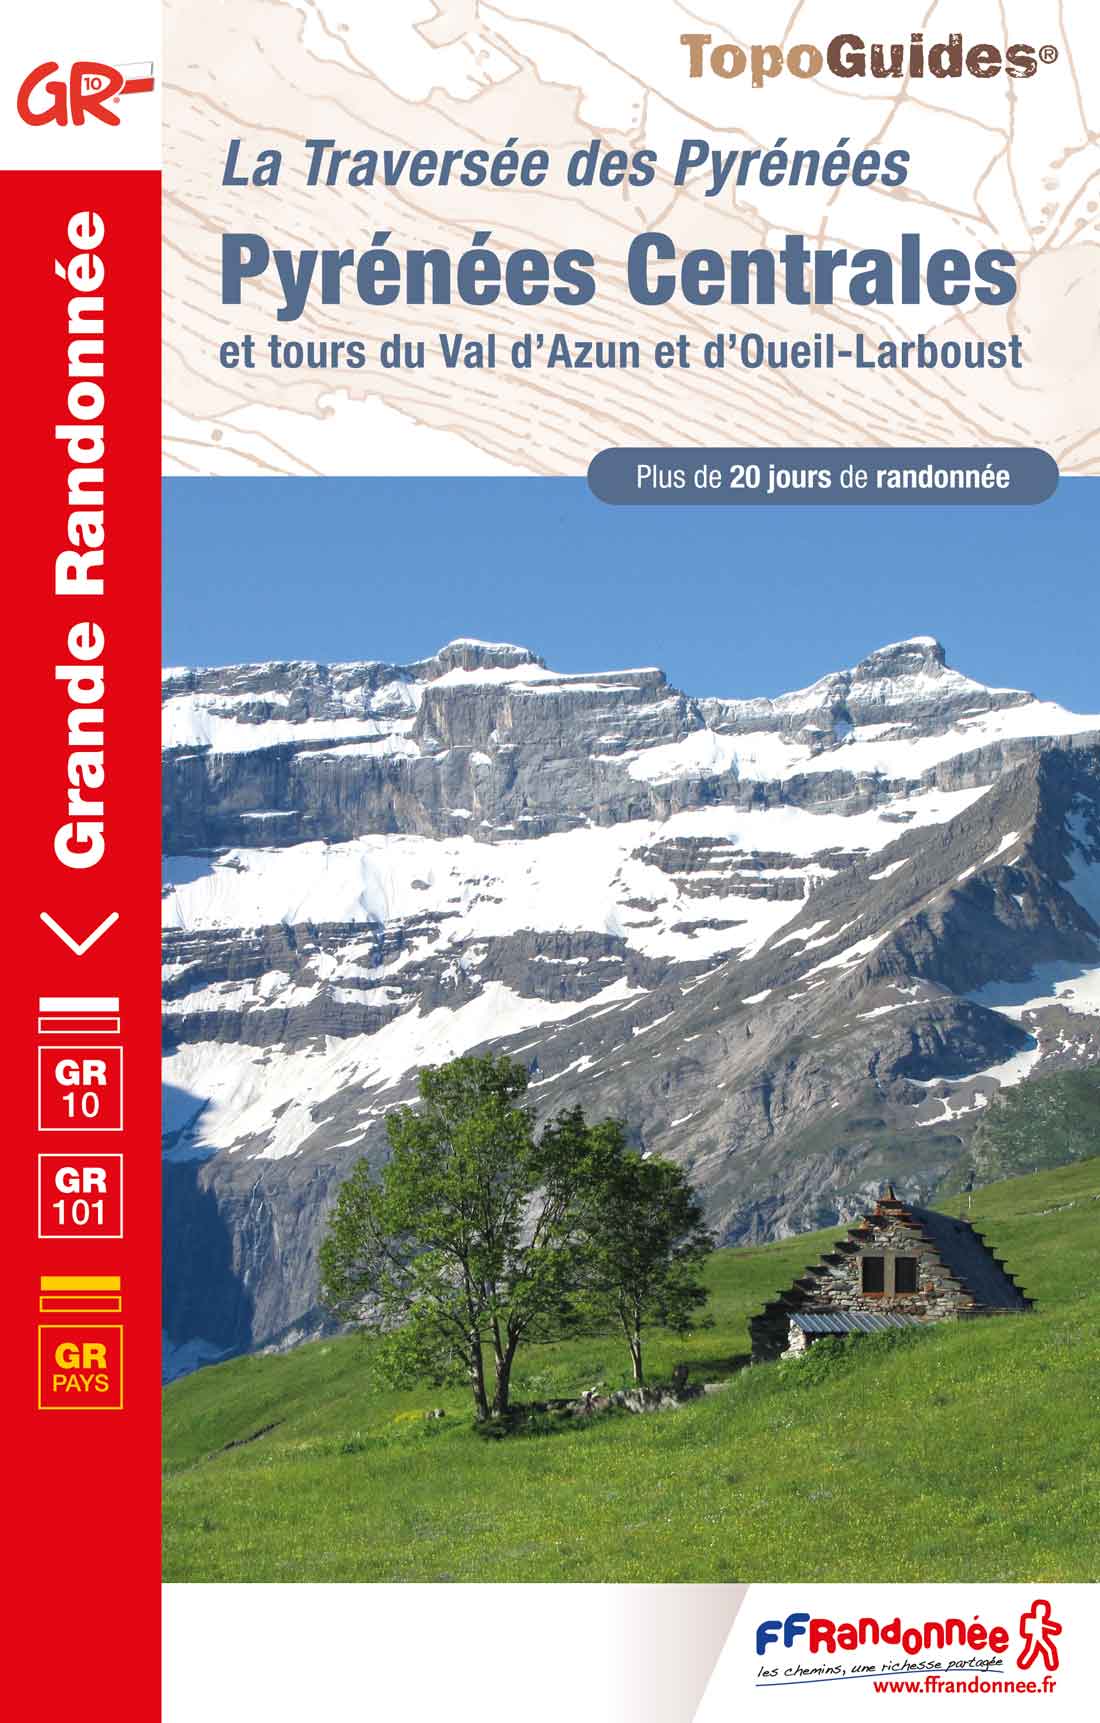 GR10 : Pyrénées centrales, GRP du Val d'Azun et d'Oueil-Larboust, de Arrens-Marsous à Bagnères-de-Luchon